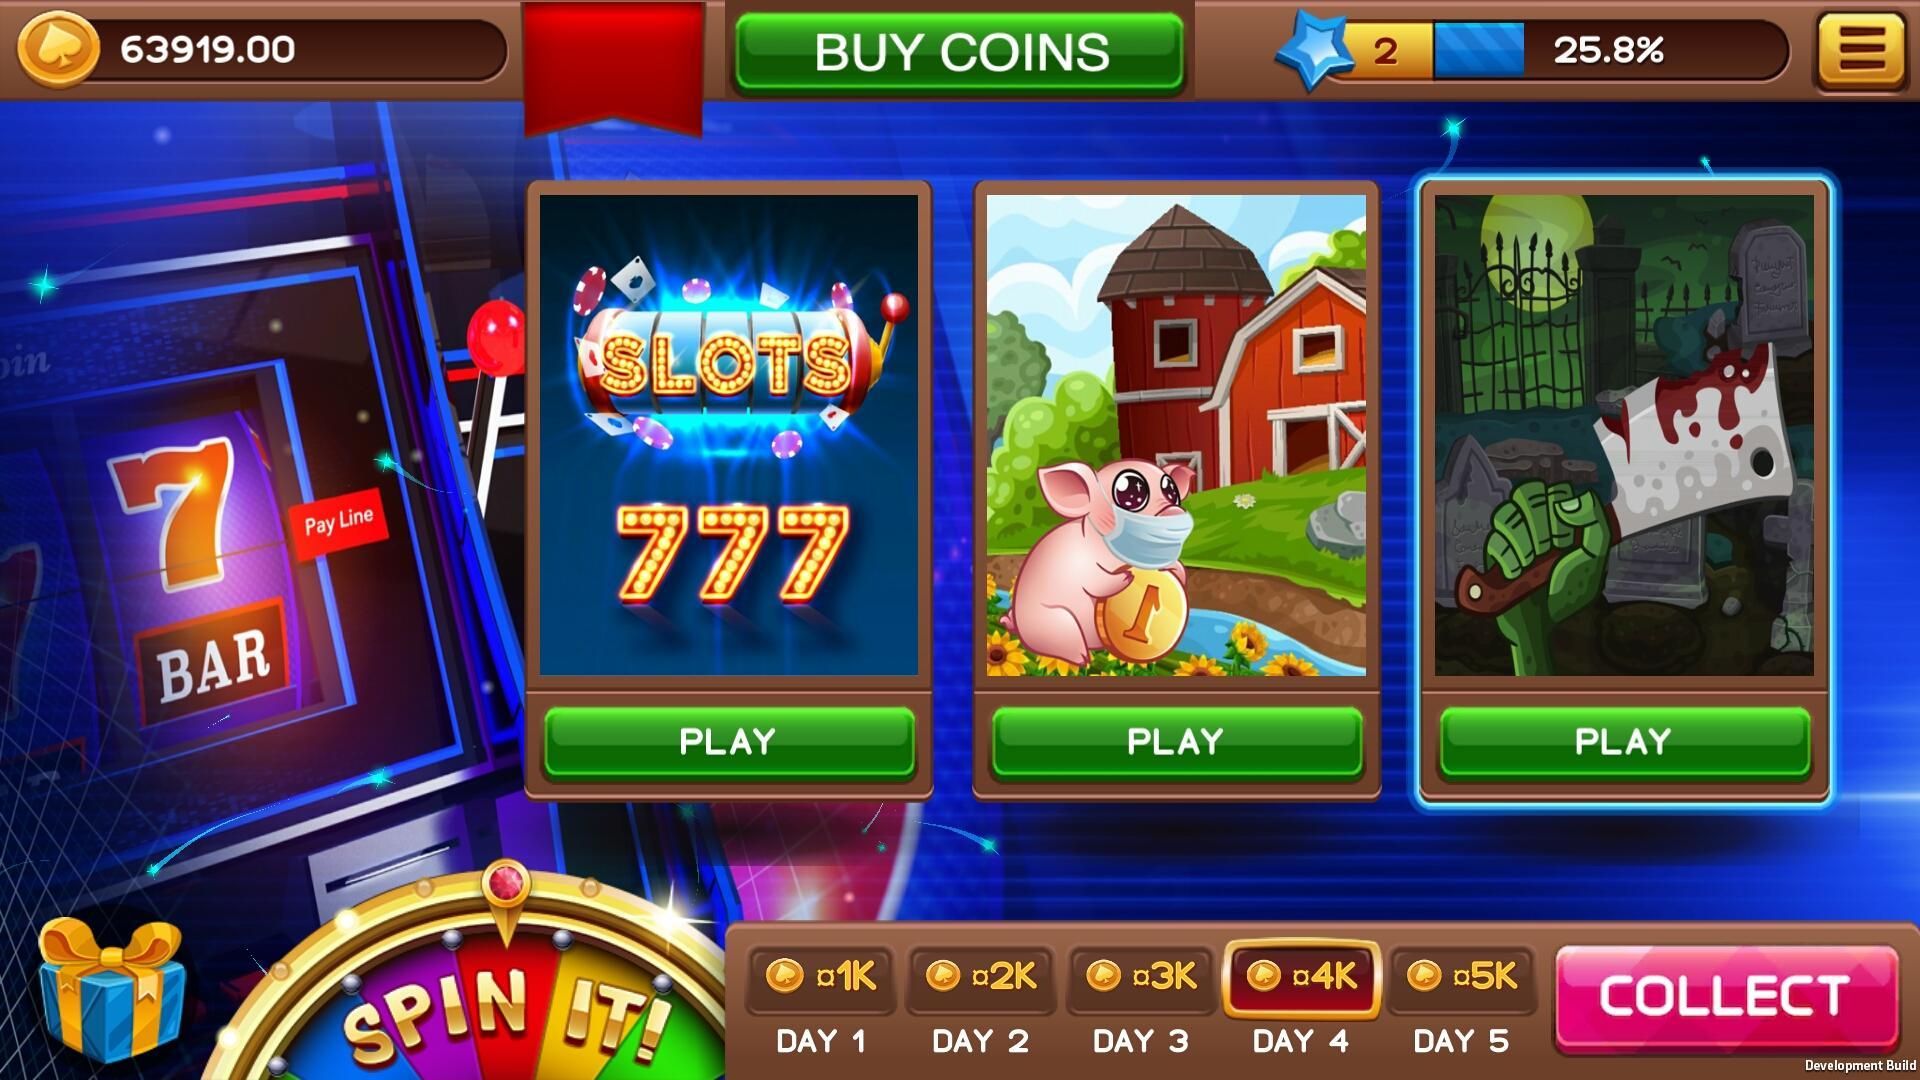 Азино777 три топора casino slots play ставки на спорт большие выигрыши быстрые выплаты надежный букмекер